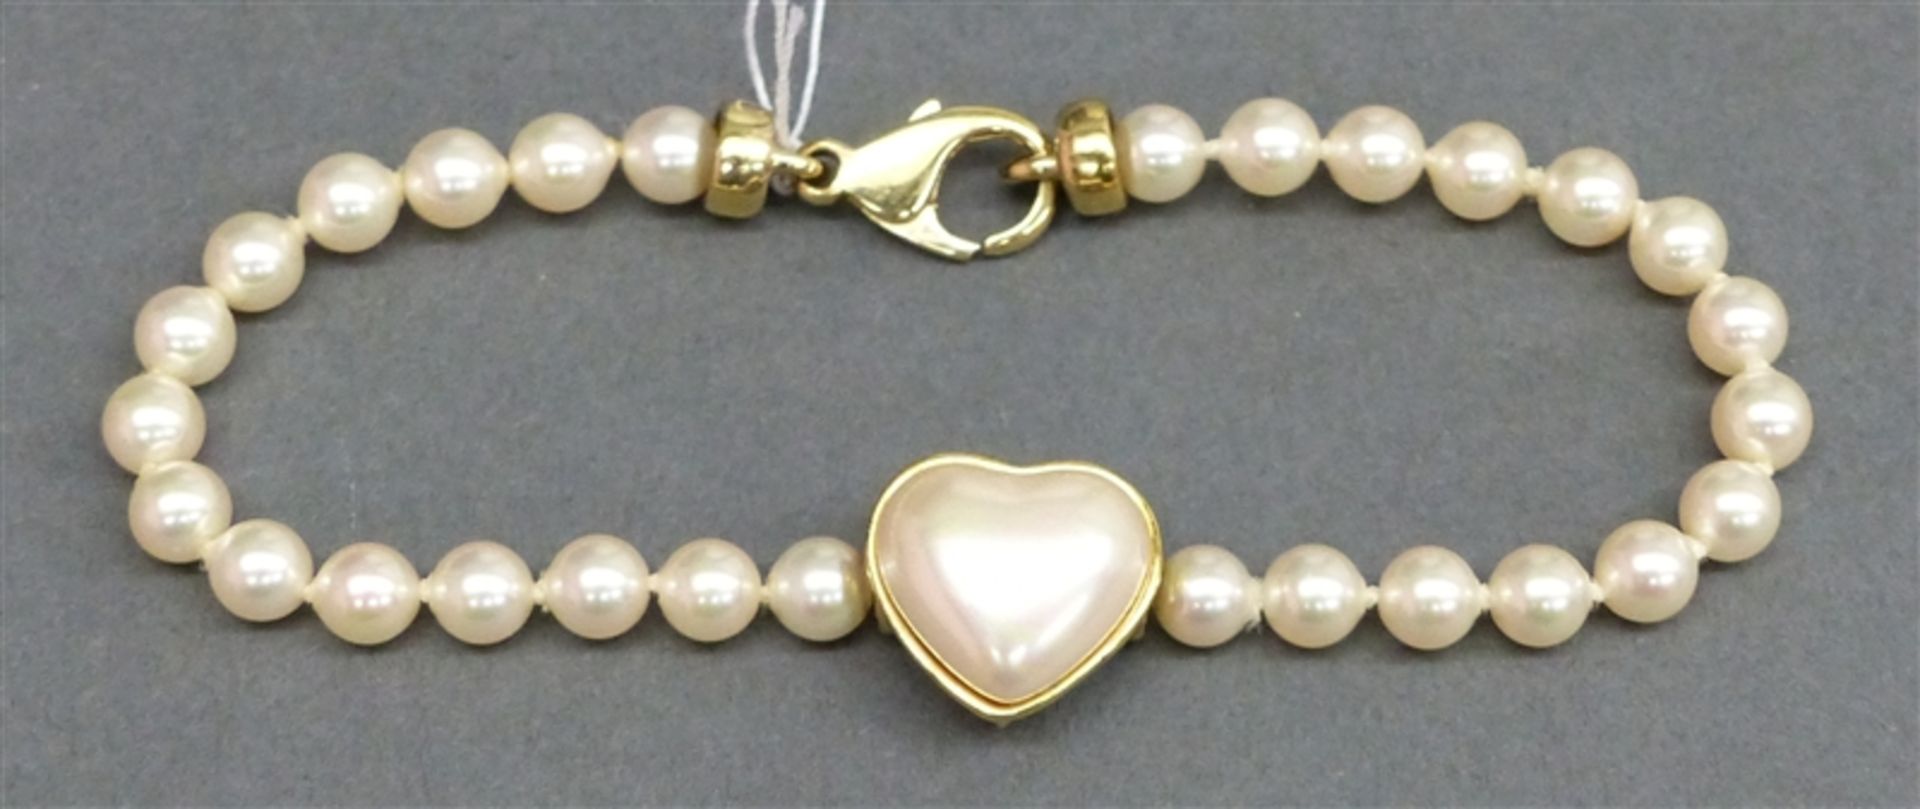 Armband 925 Silbermontur, mittig herzförmige Perle, 30 Zuchtperlen, Verschluss vergoldet, l 18,5